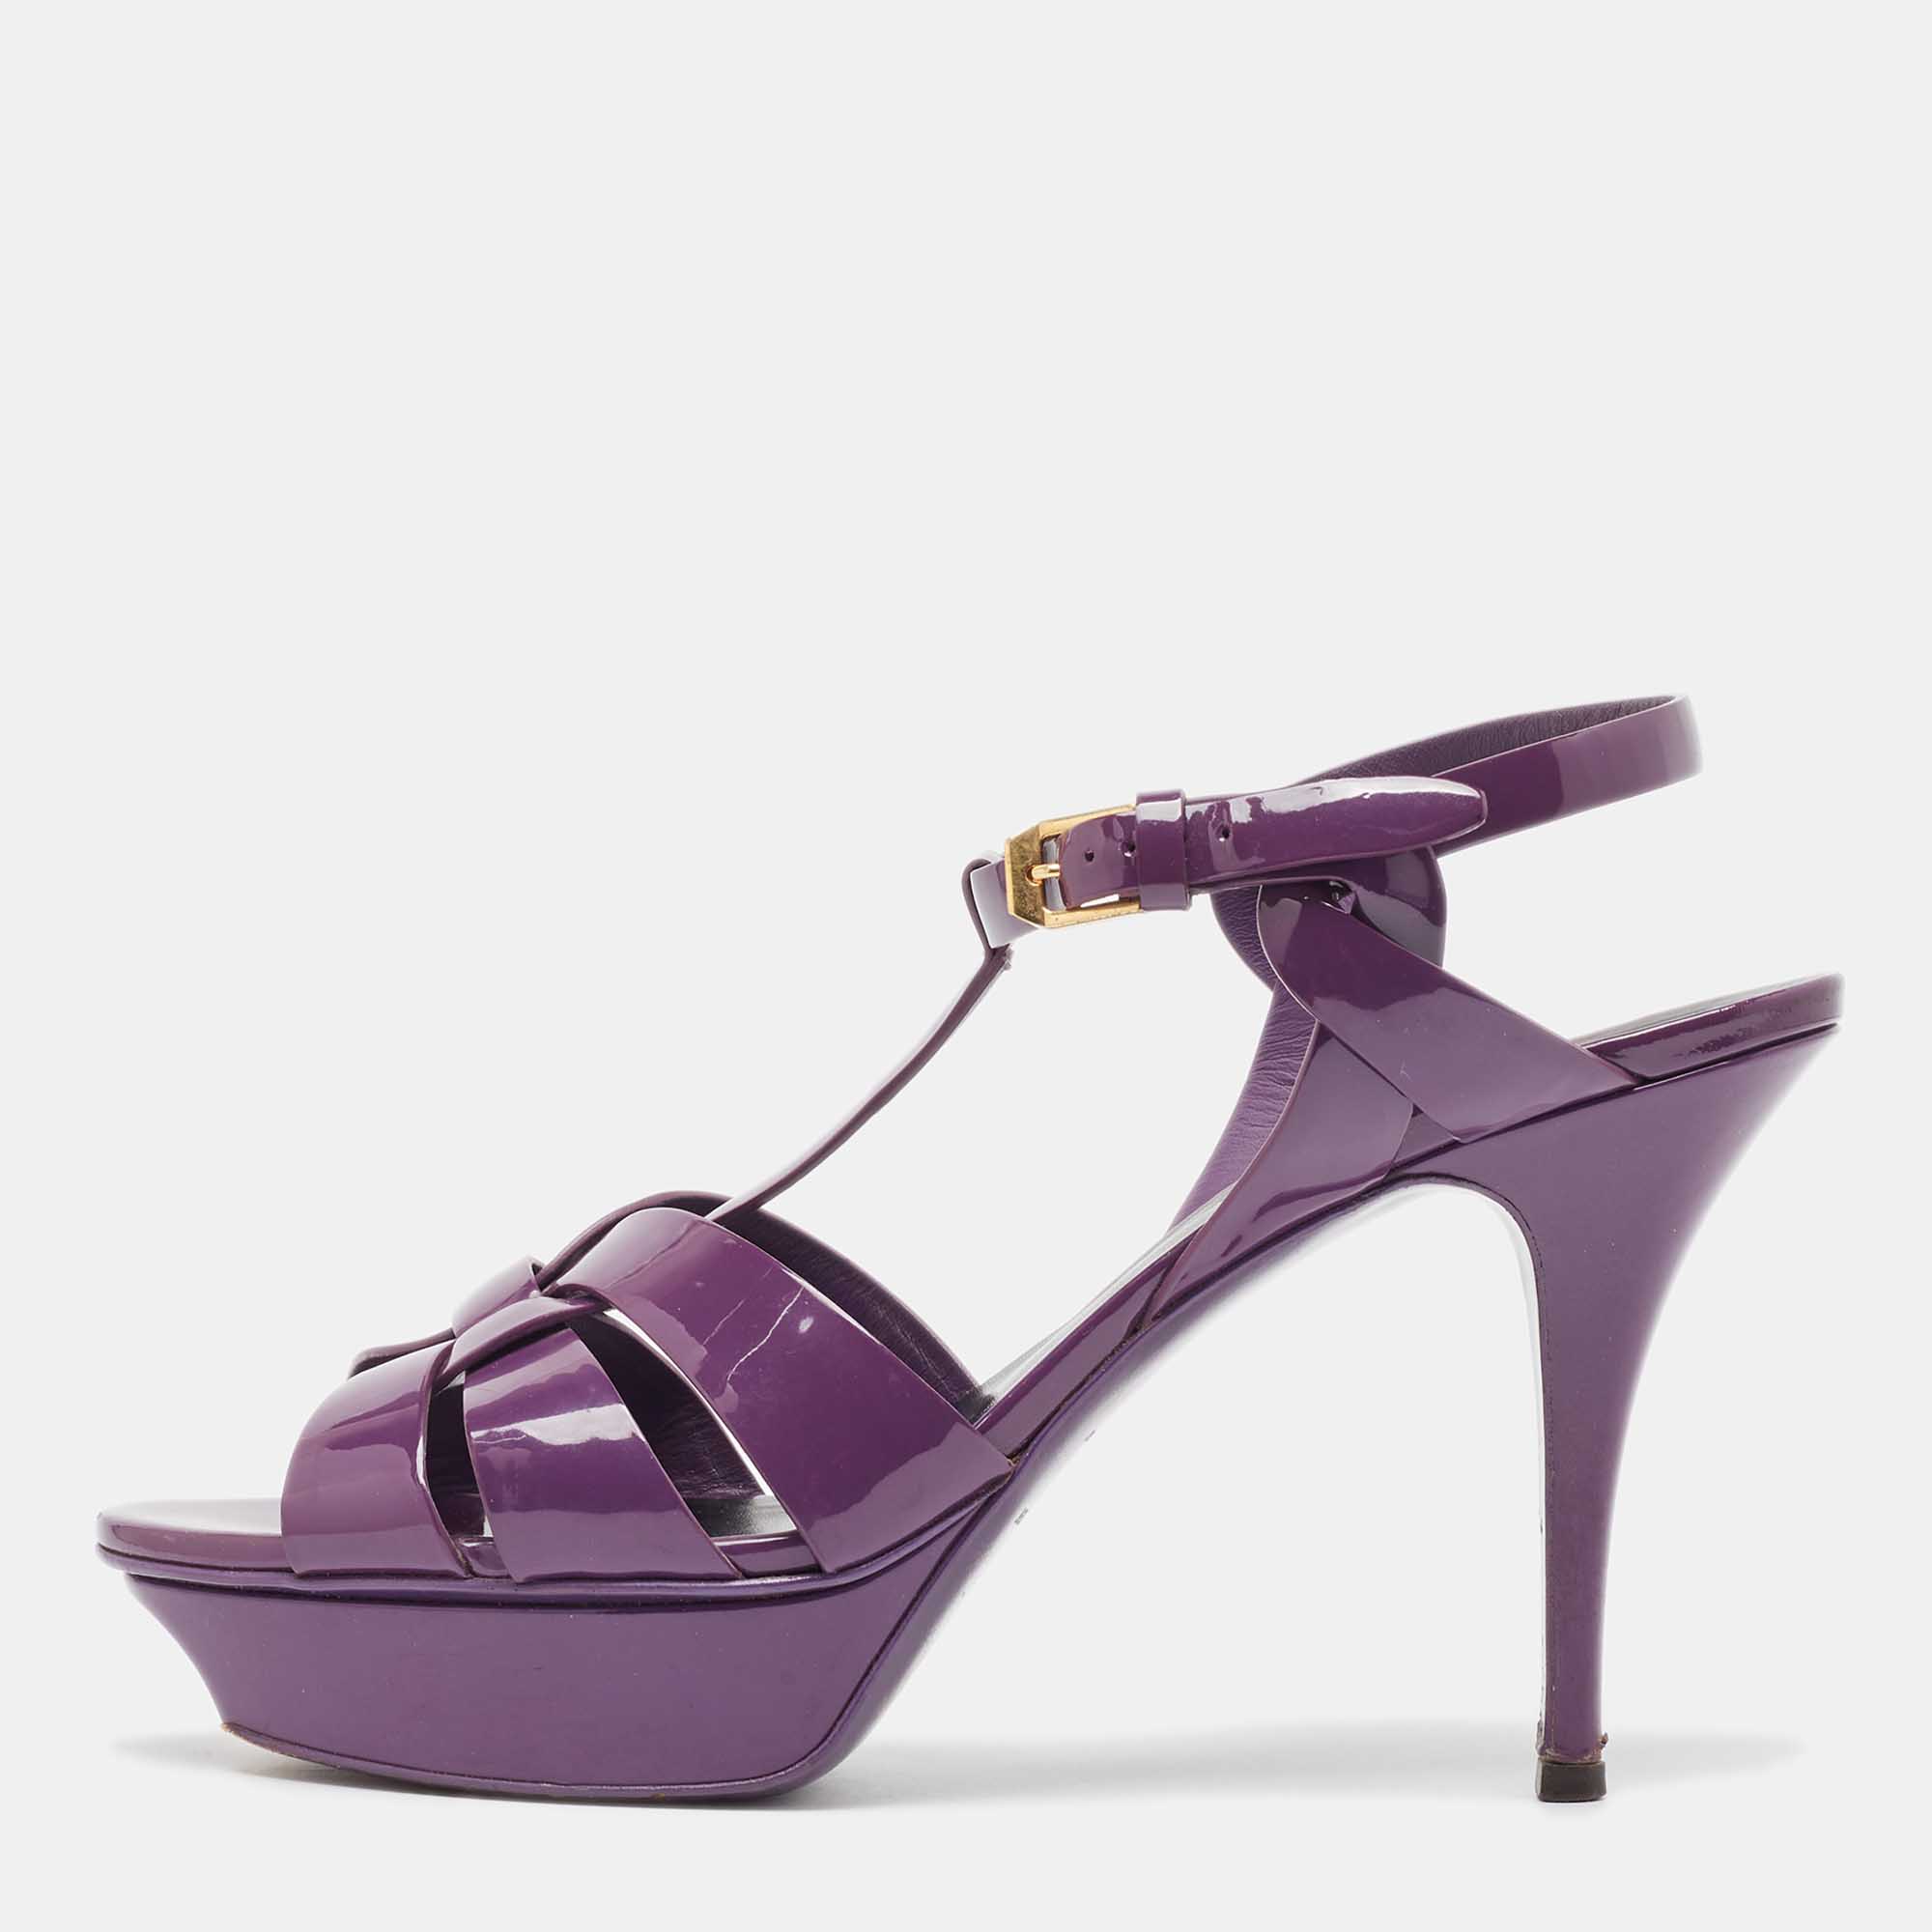 Saint laurent paris saint laurent purple patent leather tribute sandals size 41